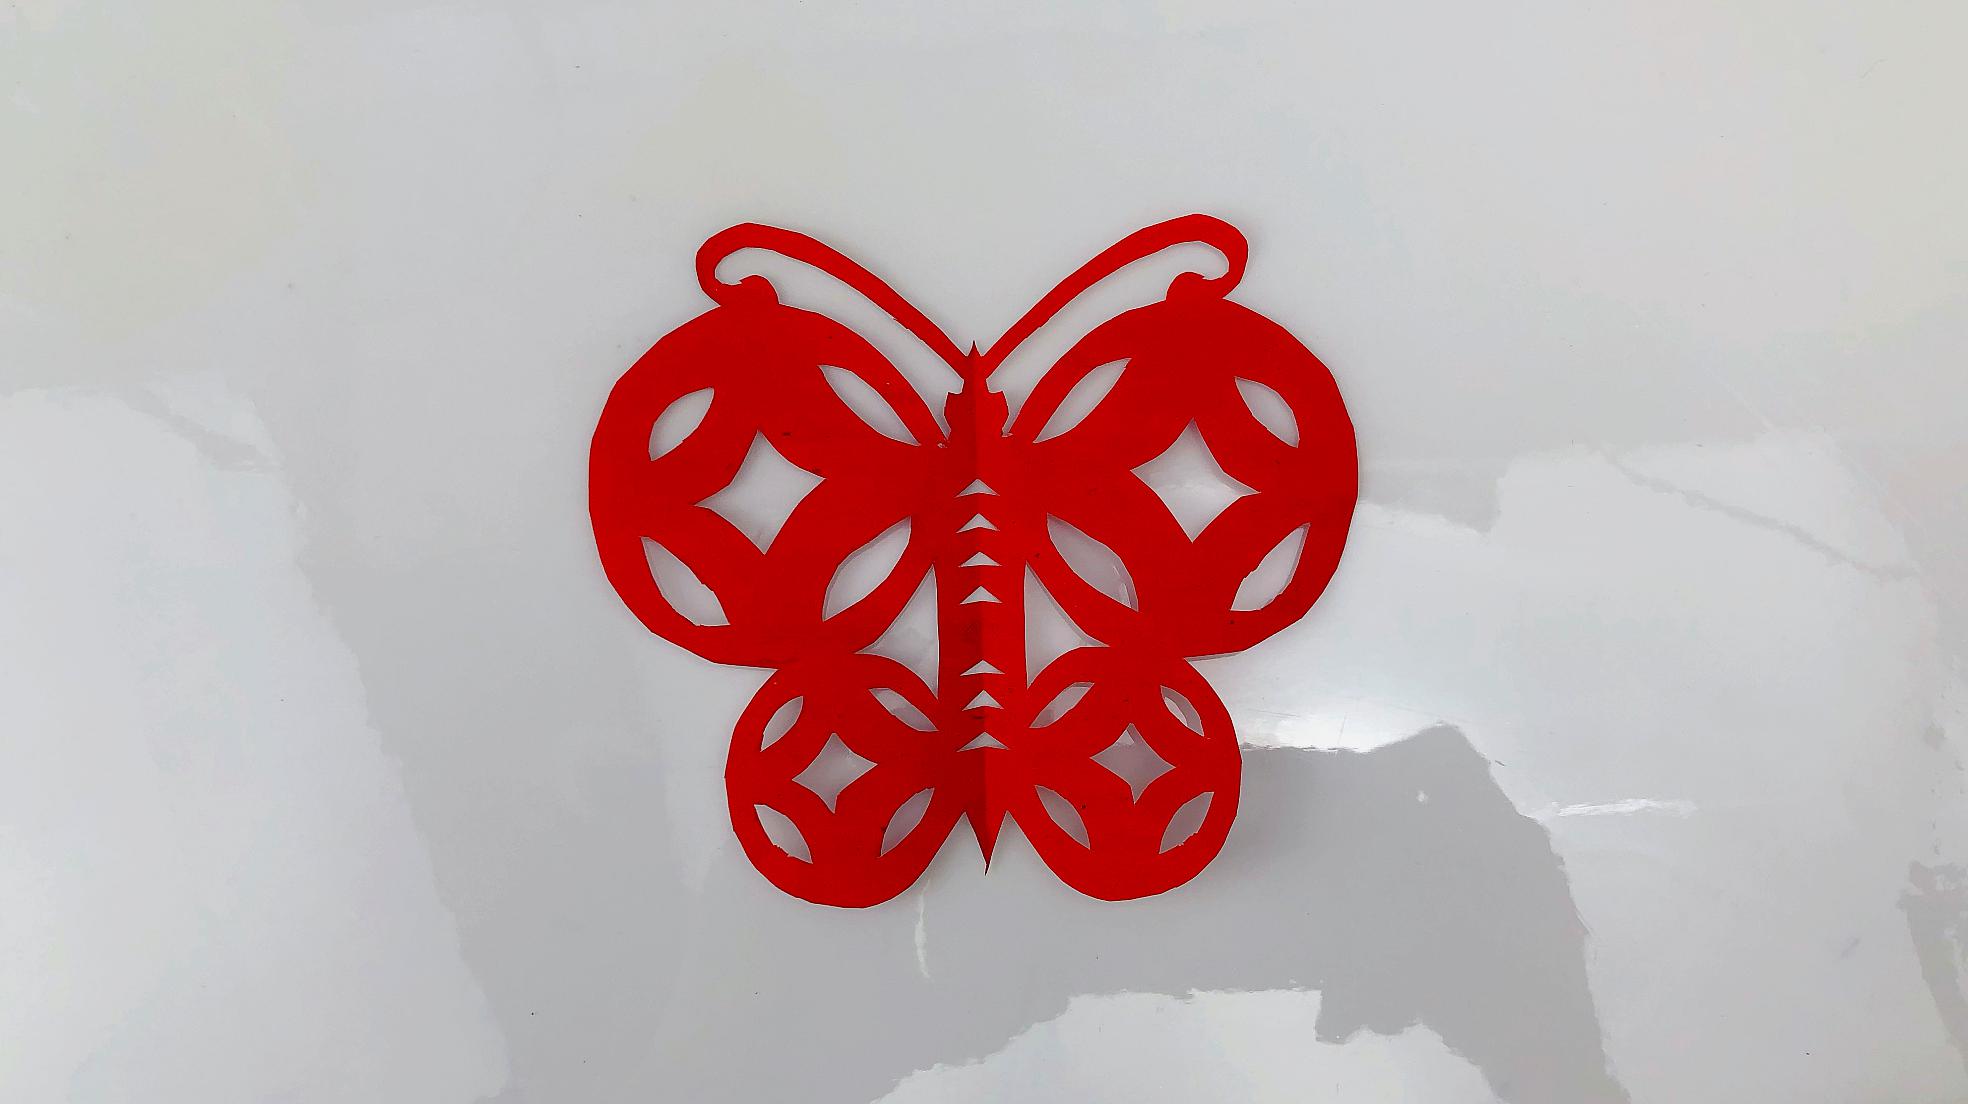 蝴蝶剪纸图案大全:中国蝴蝶文化之陕西蝶剪纸（三角形剪纸图案） - 有点网 - 好手艺